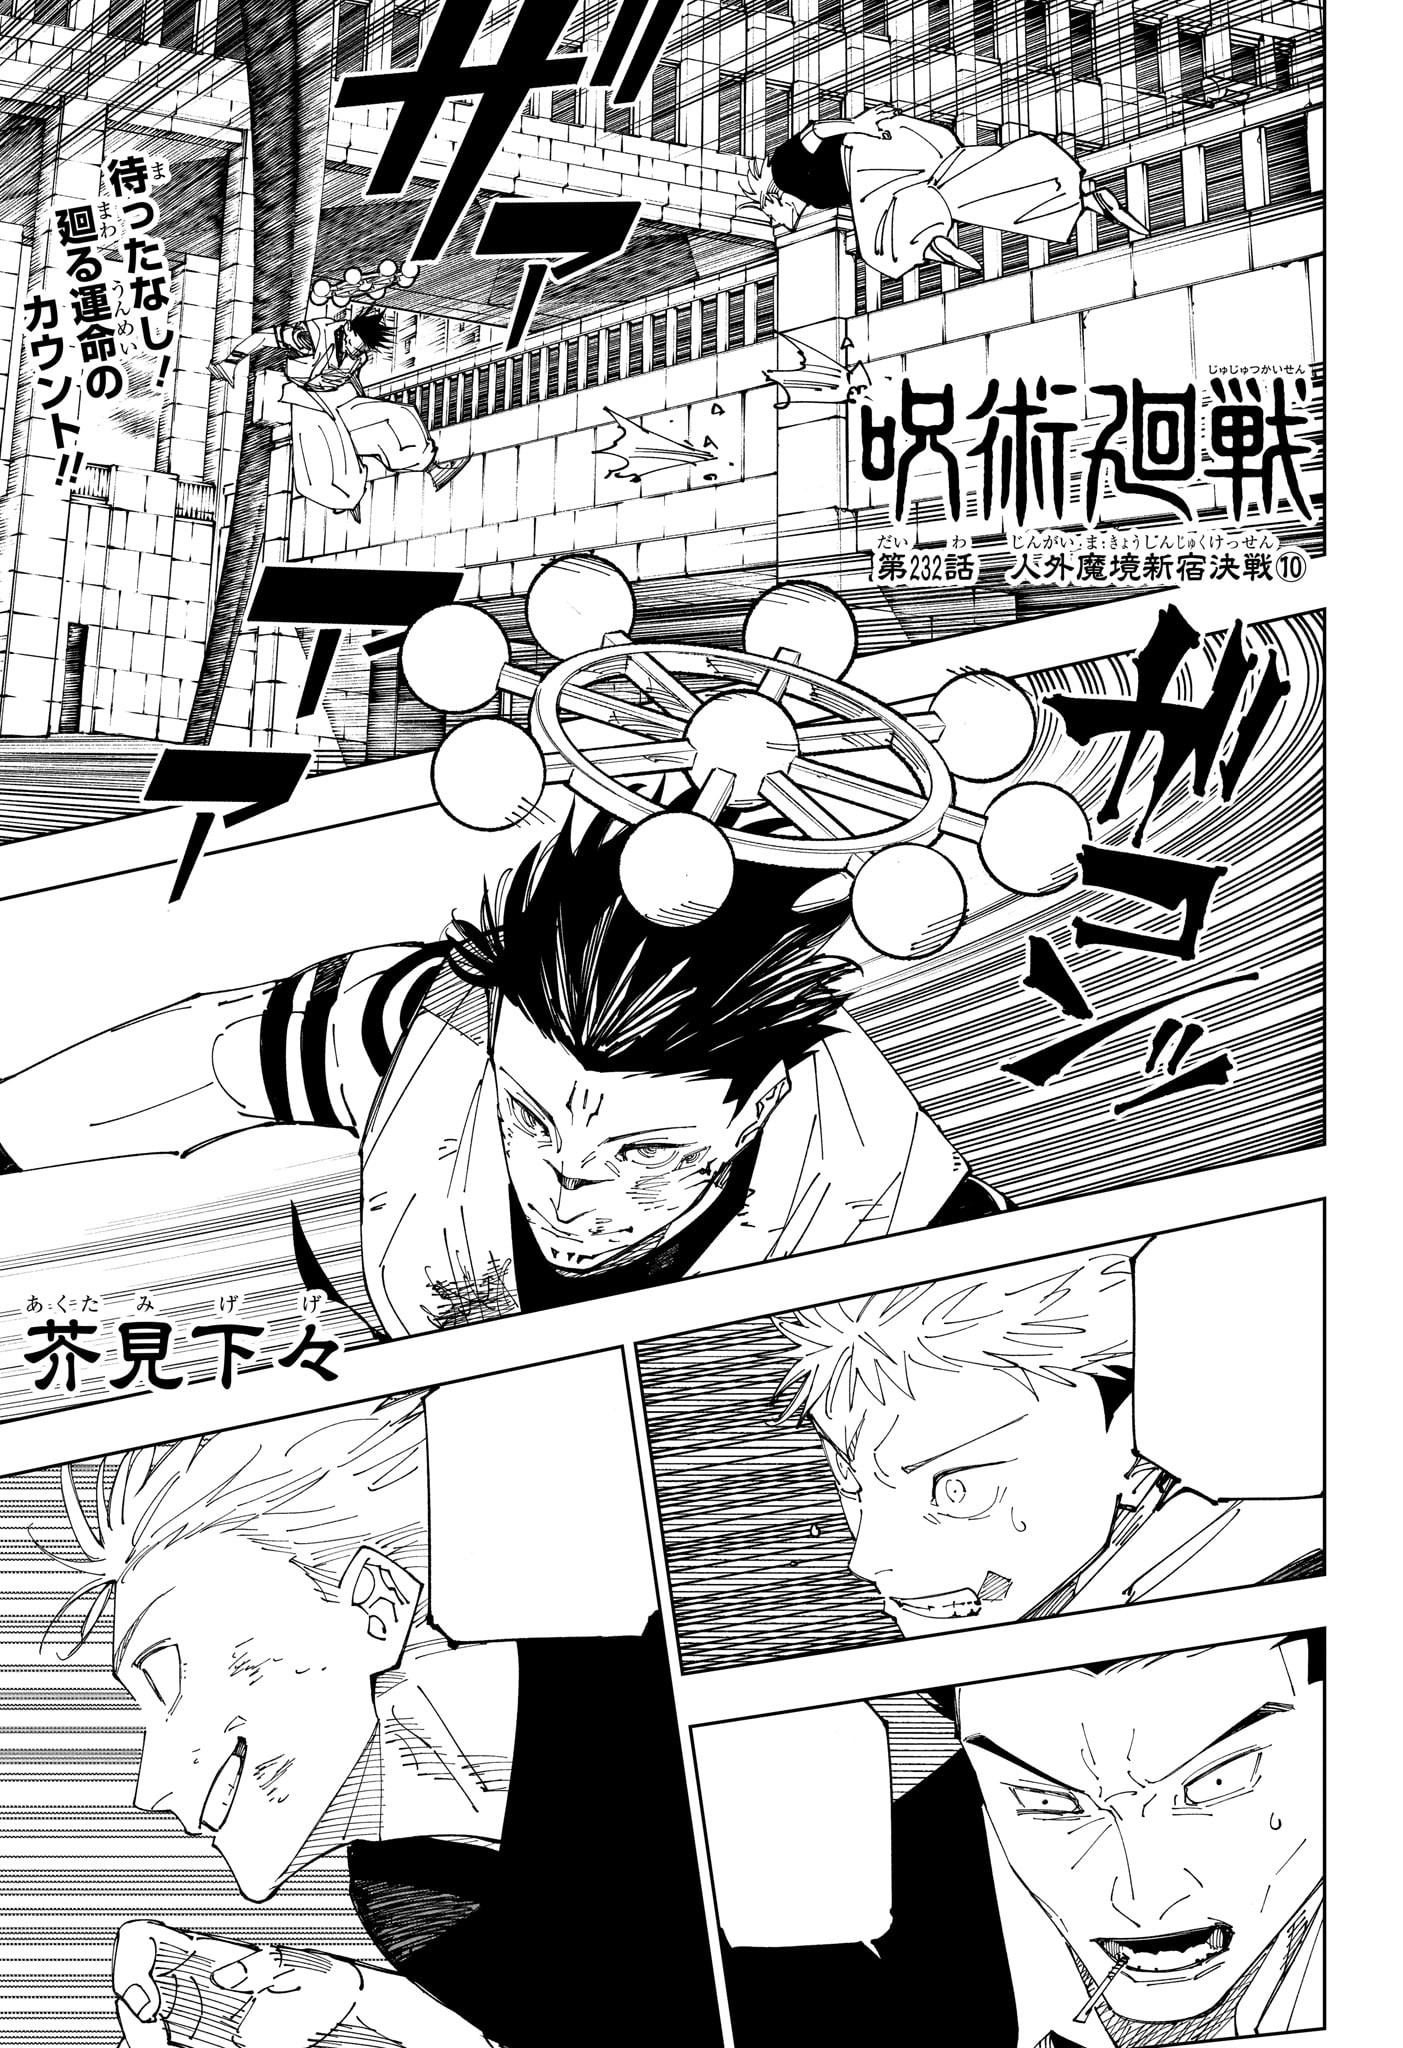 Jujutsu Kaisen Capítulo 229 - Manga Online